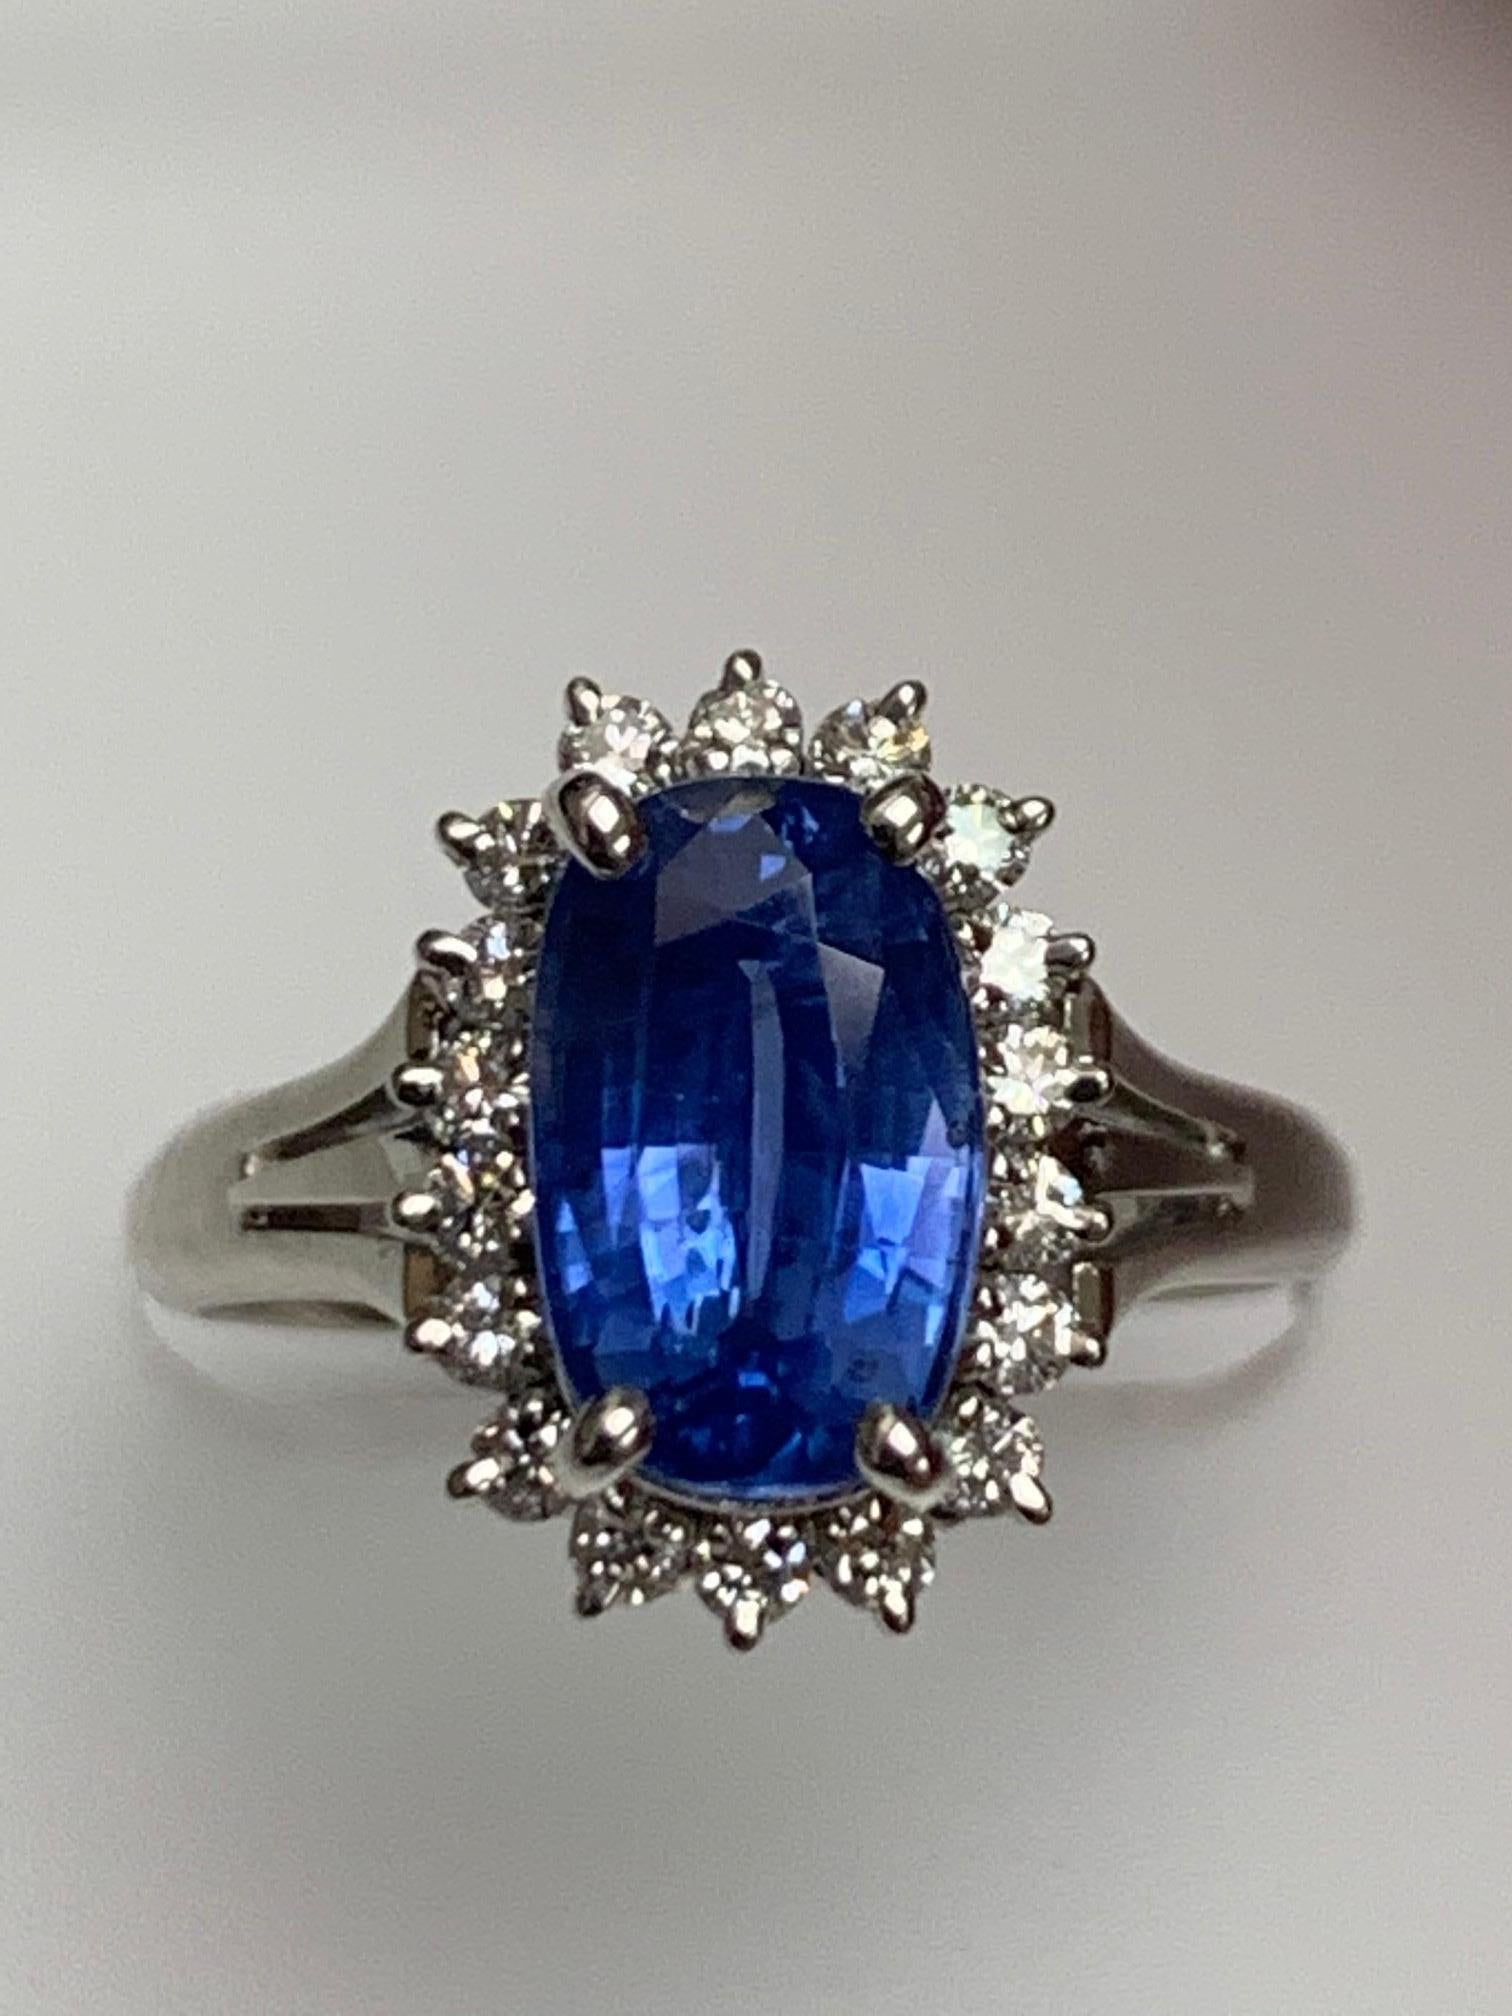 2.83 Karat Natürlich Keine Hitze GIA zertifiziert   kissen Form Blauer Saphir in Cocktail-Ring umgeben mit Diamanten um.